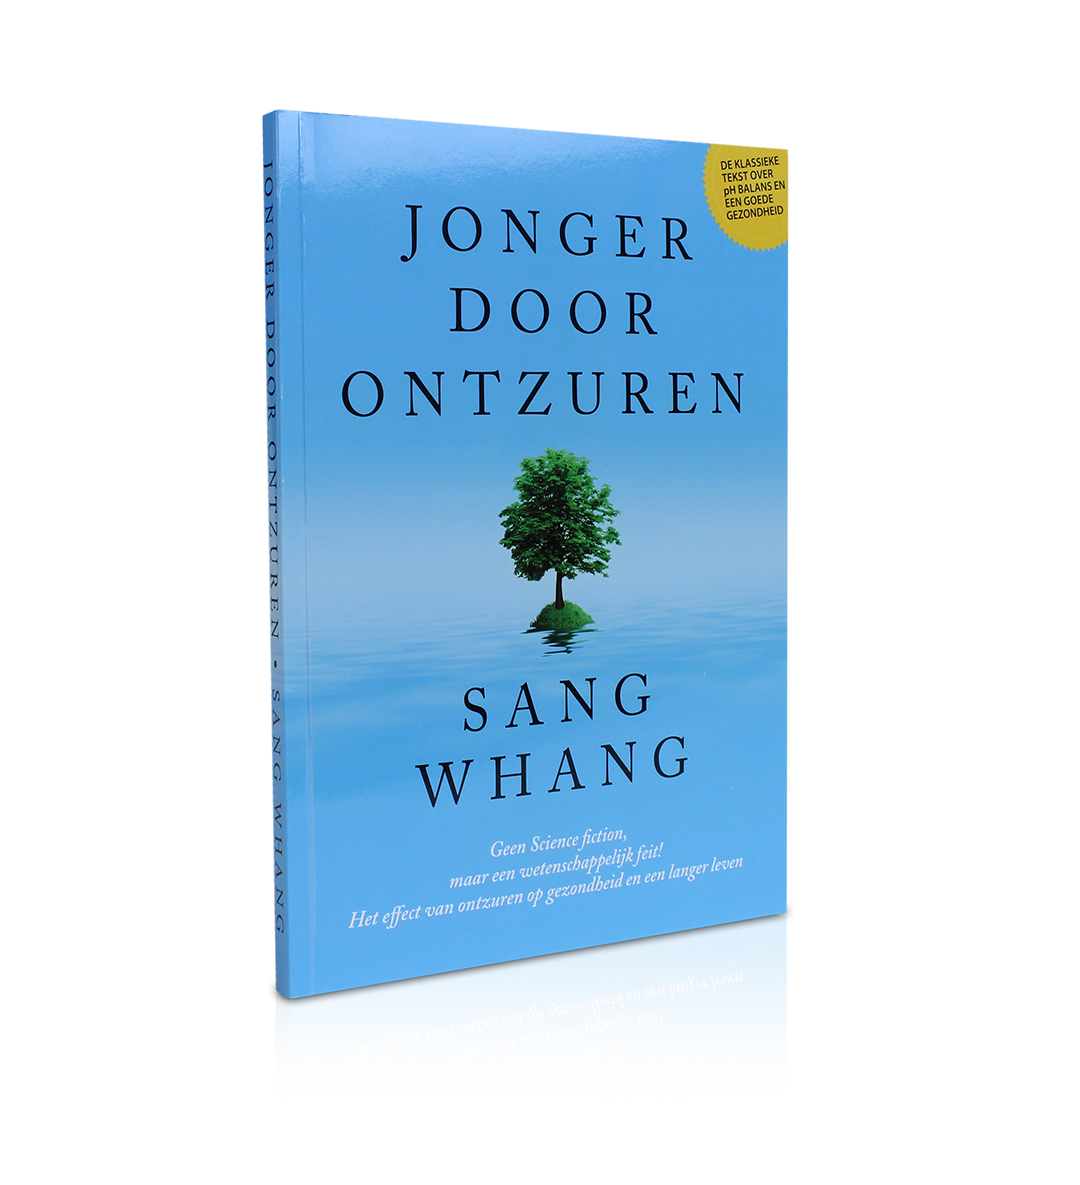 Boek: "Jonger door Ontzuren" - Sang Whang